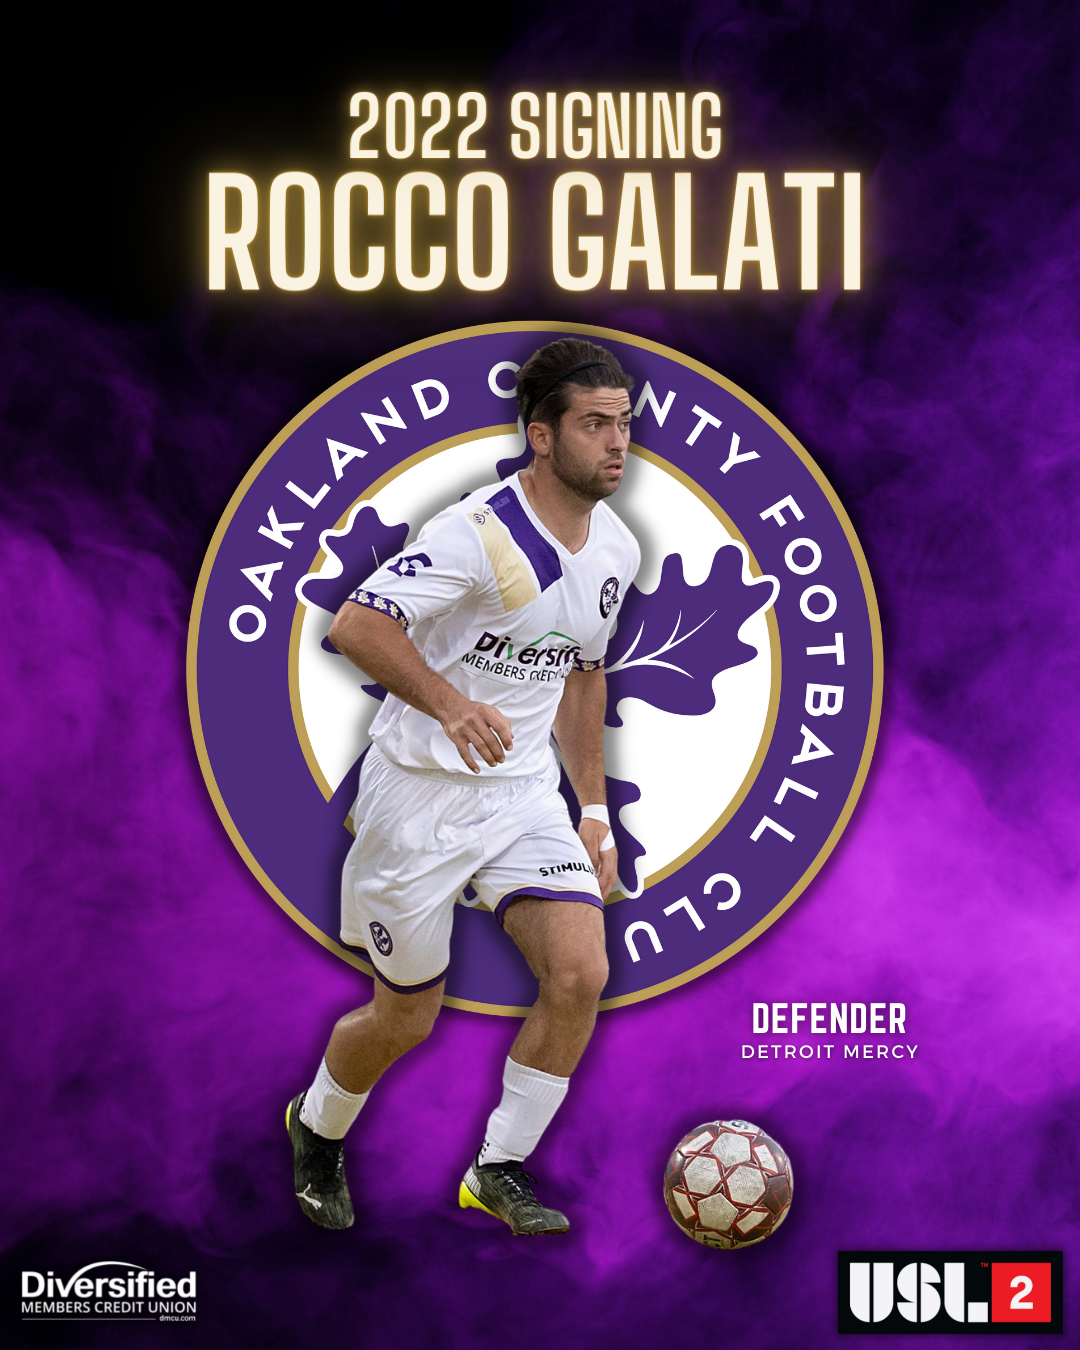 Rocco Galati